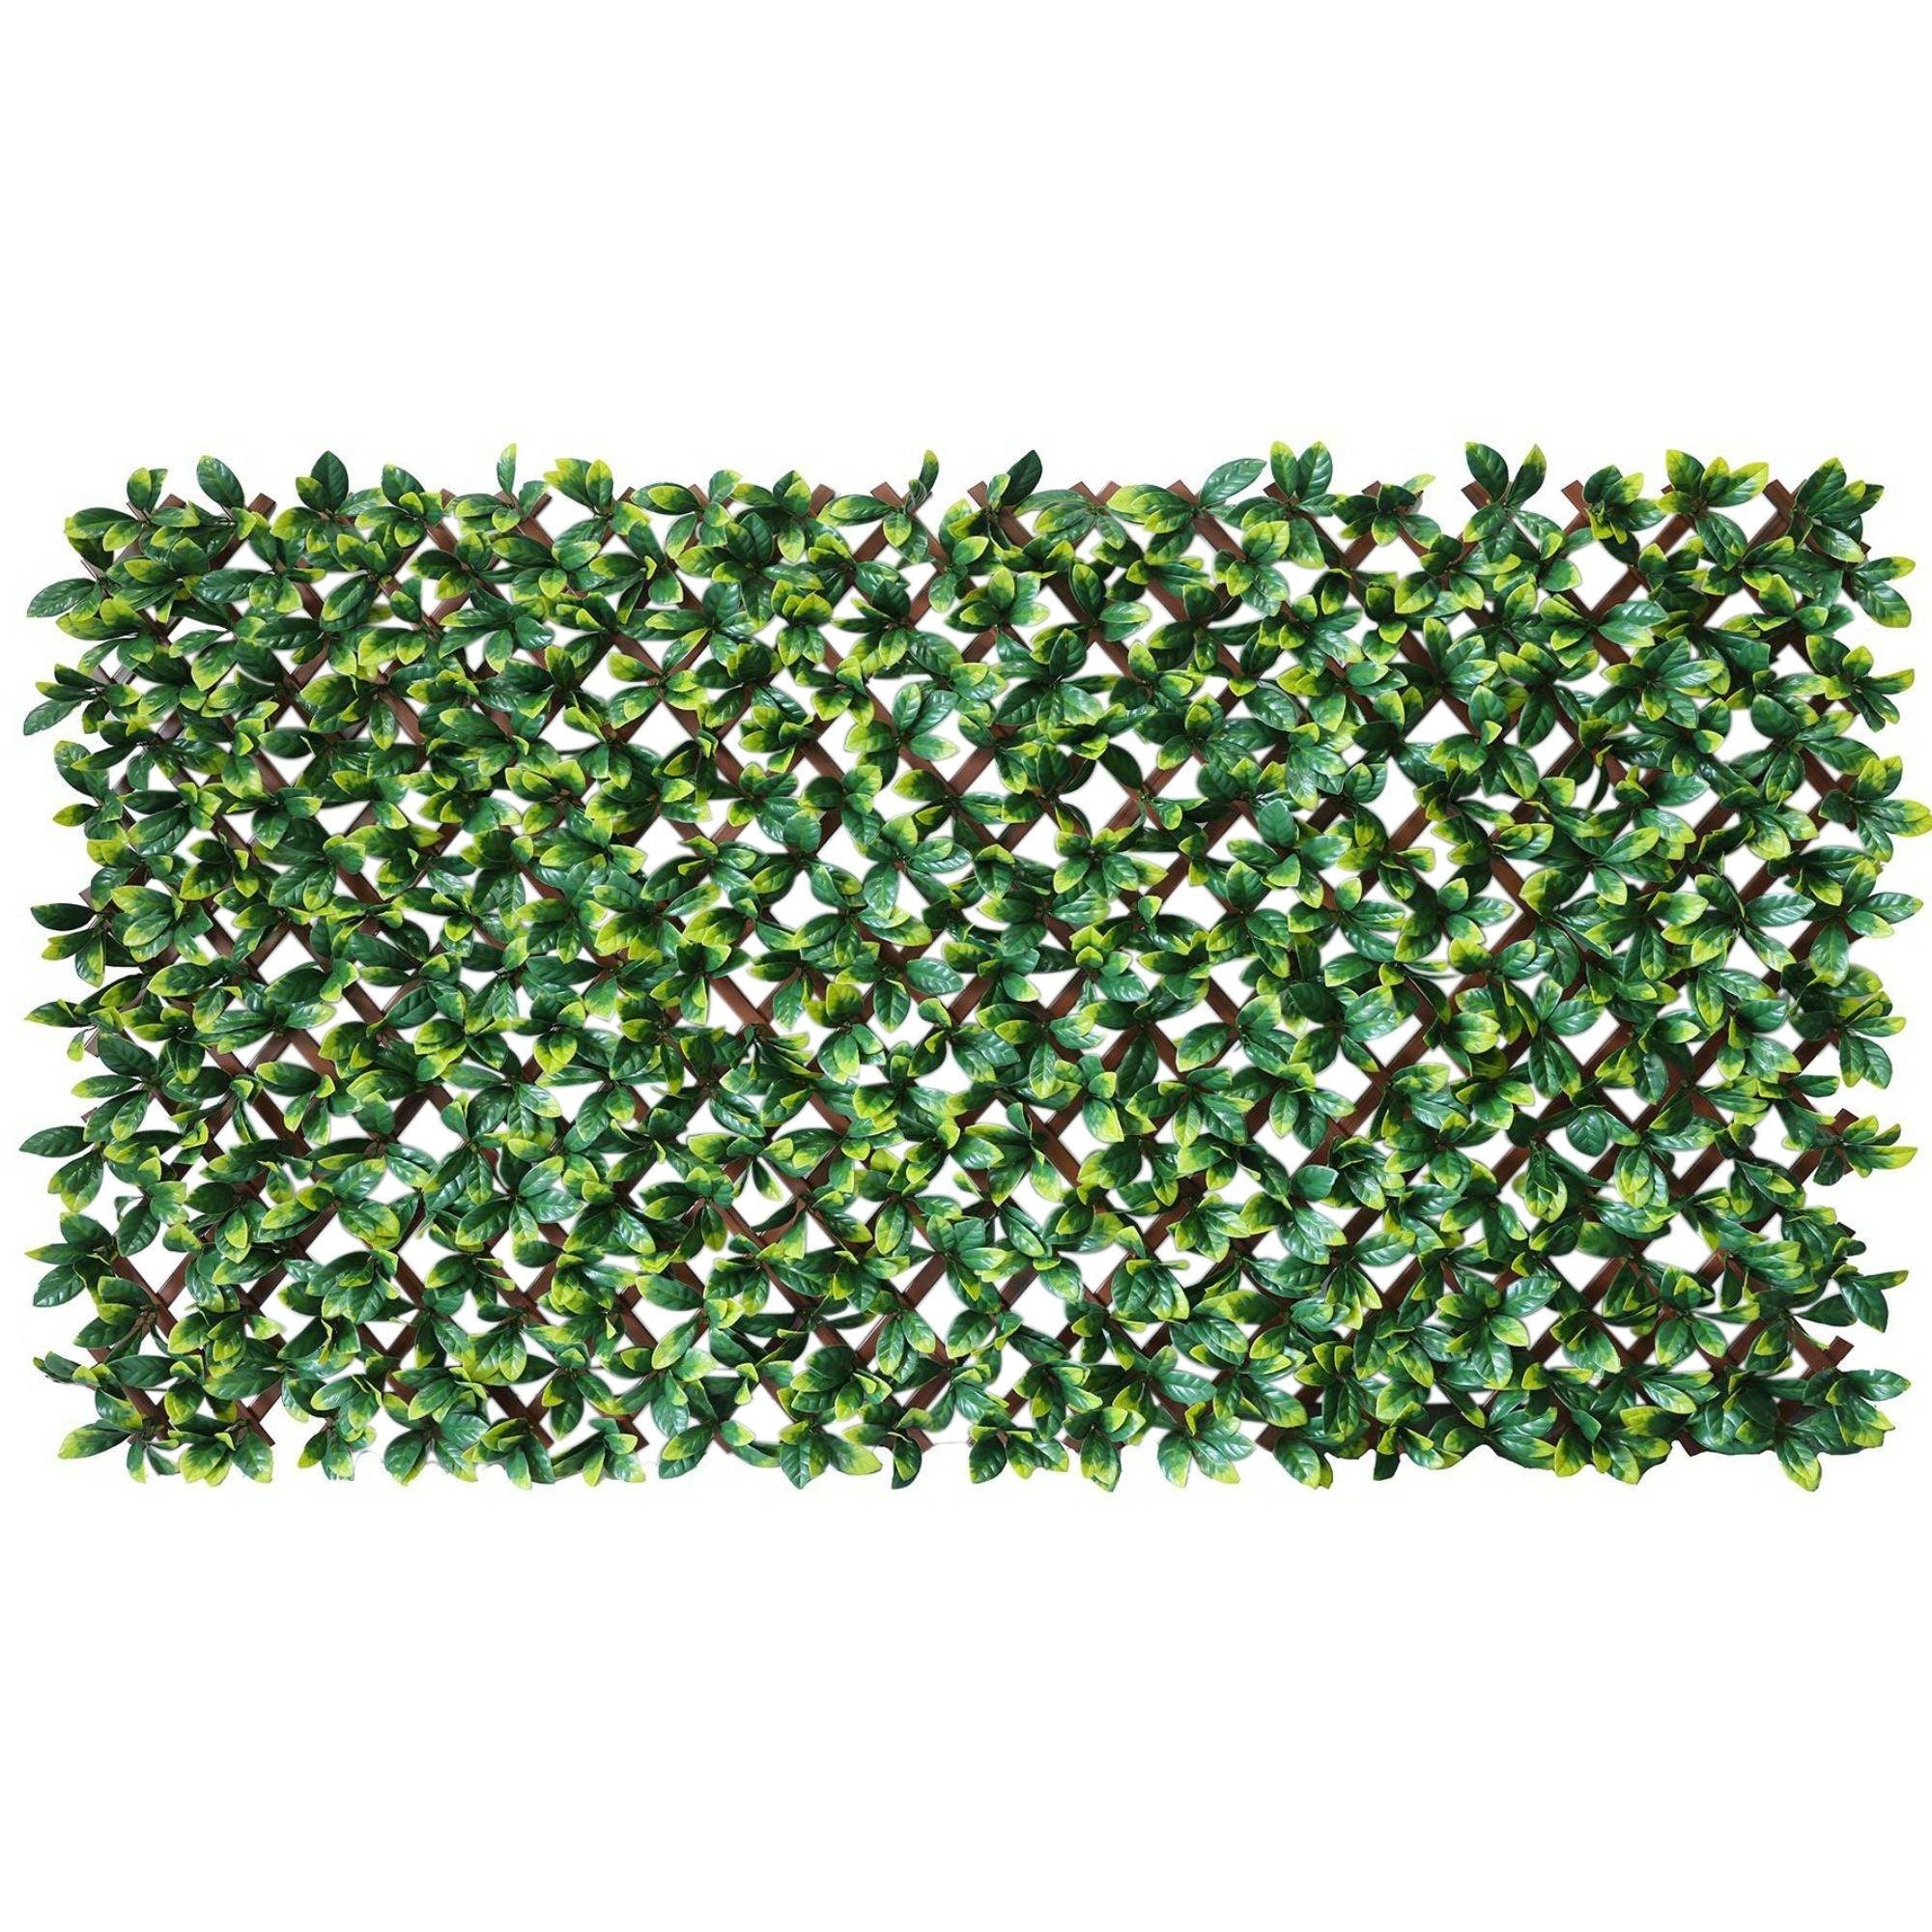 laurel-leaf-artificial-hedge-extendable-trellis-screen-2-meter-by-1-meter-uv-resistant-pvc-314315.jpg